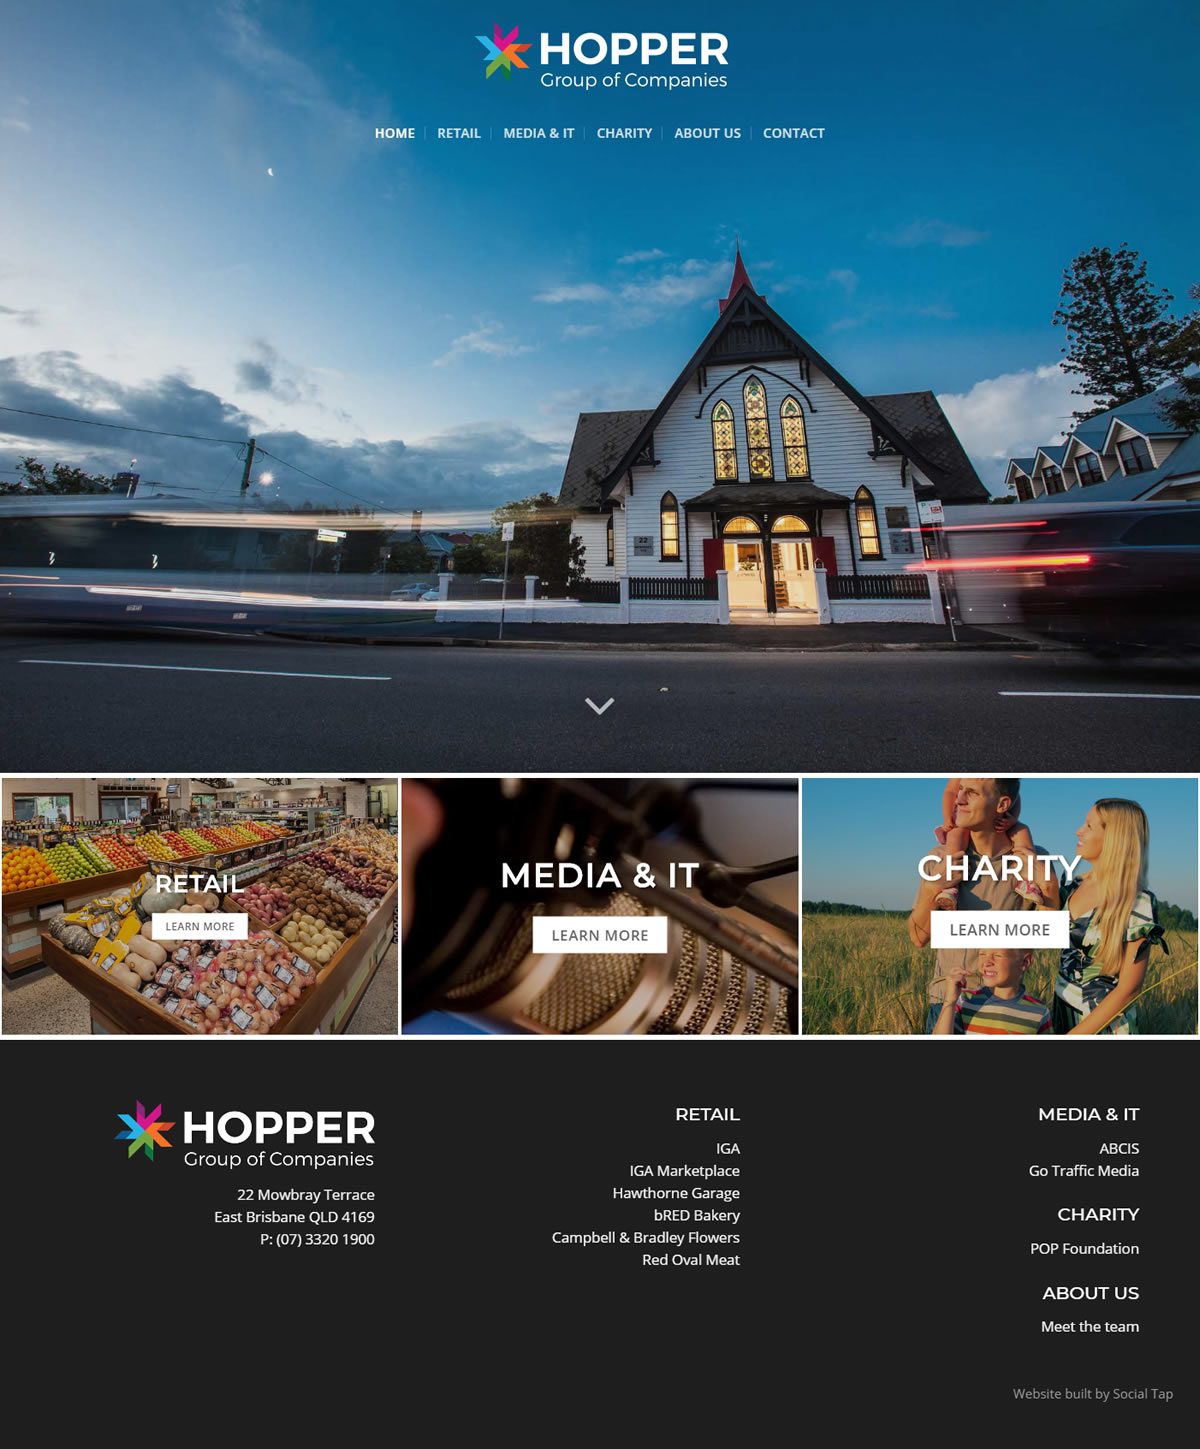 Hospitality Tourism Website Design Hopper Group Of Companies